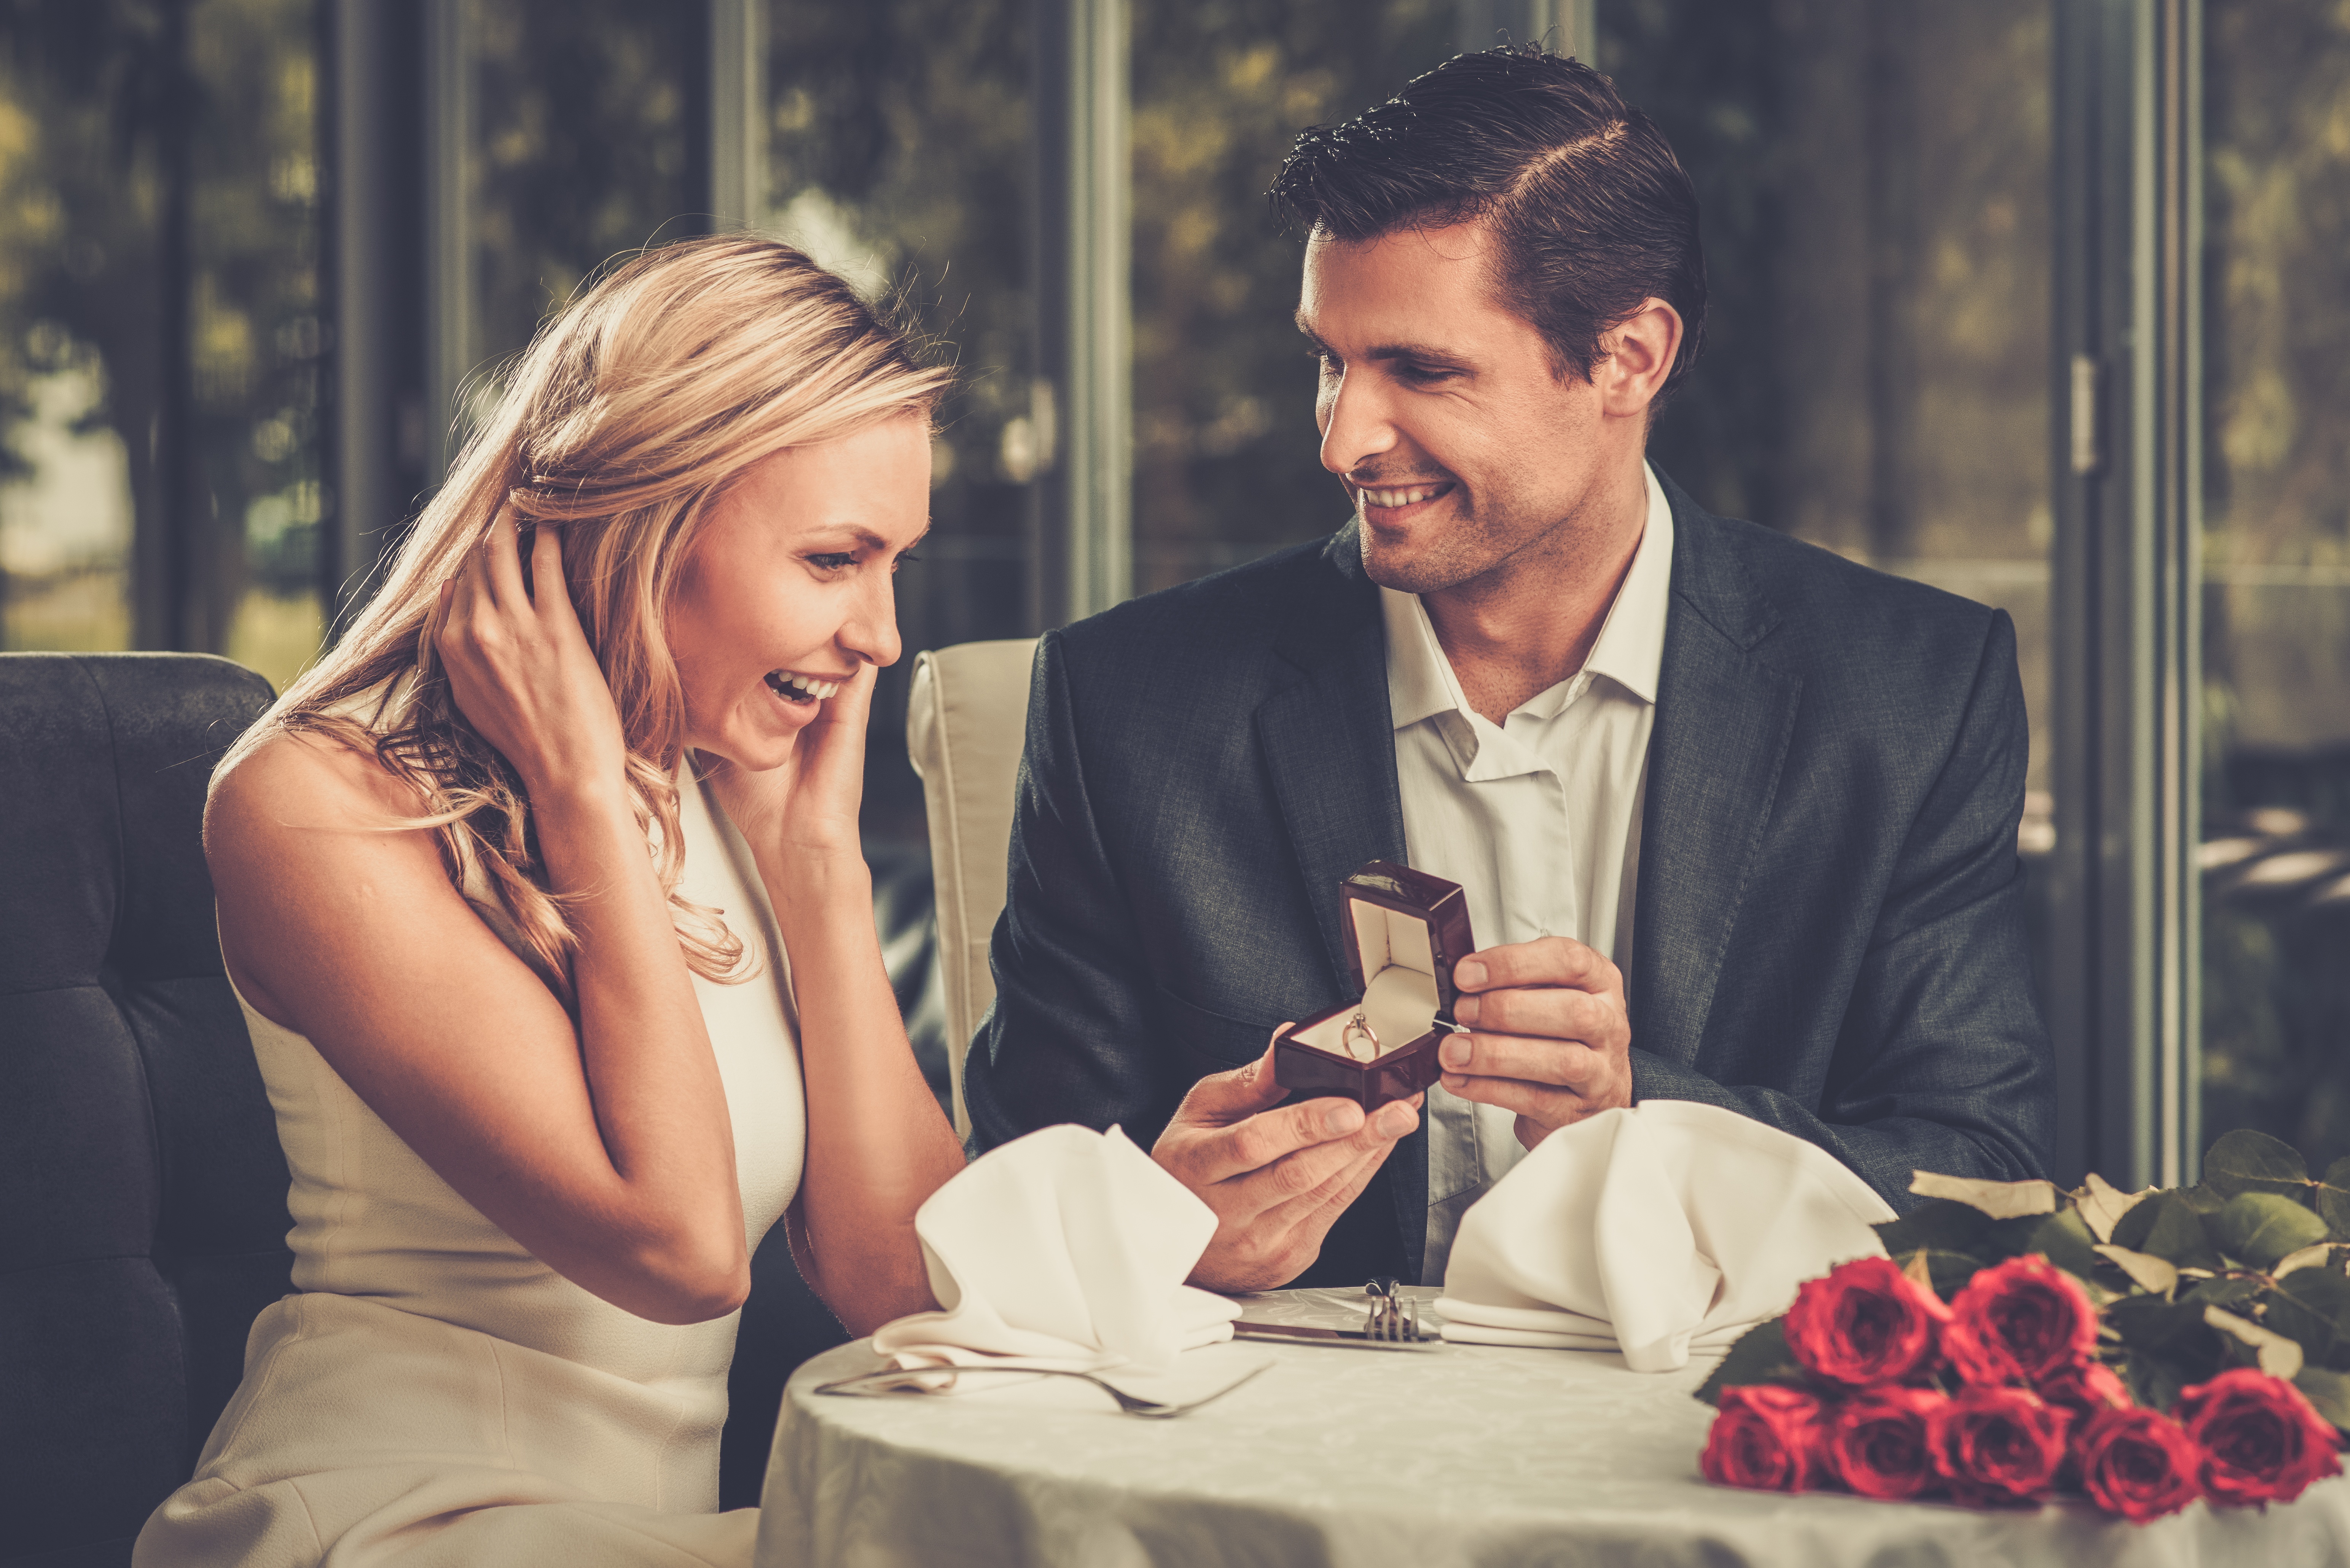 Ein Mann gibt einer Frau einen Ring | Quelle: Shutterstock